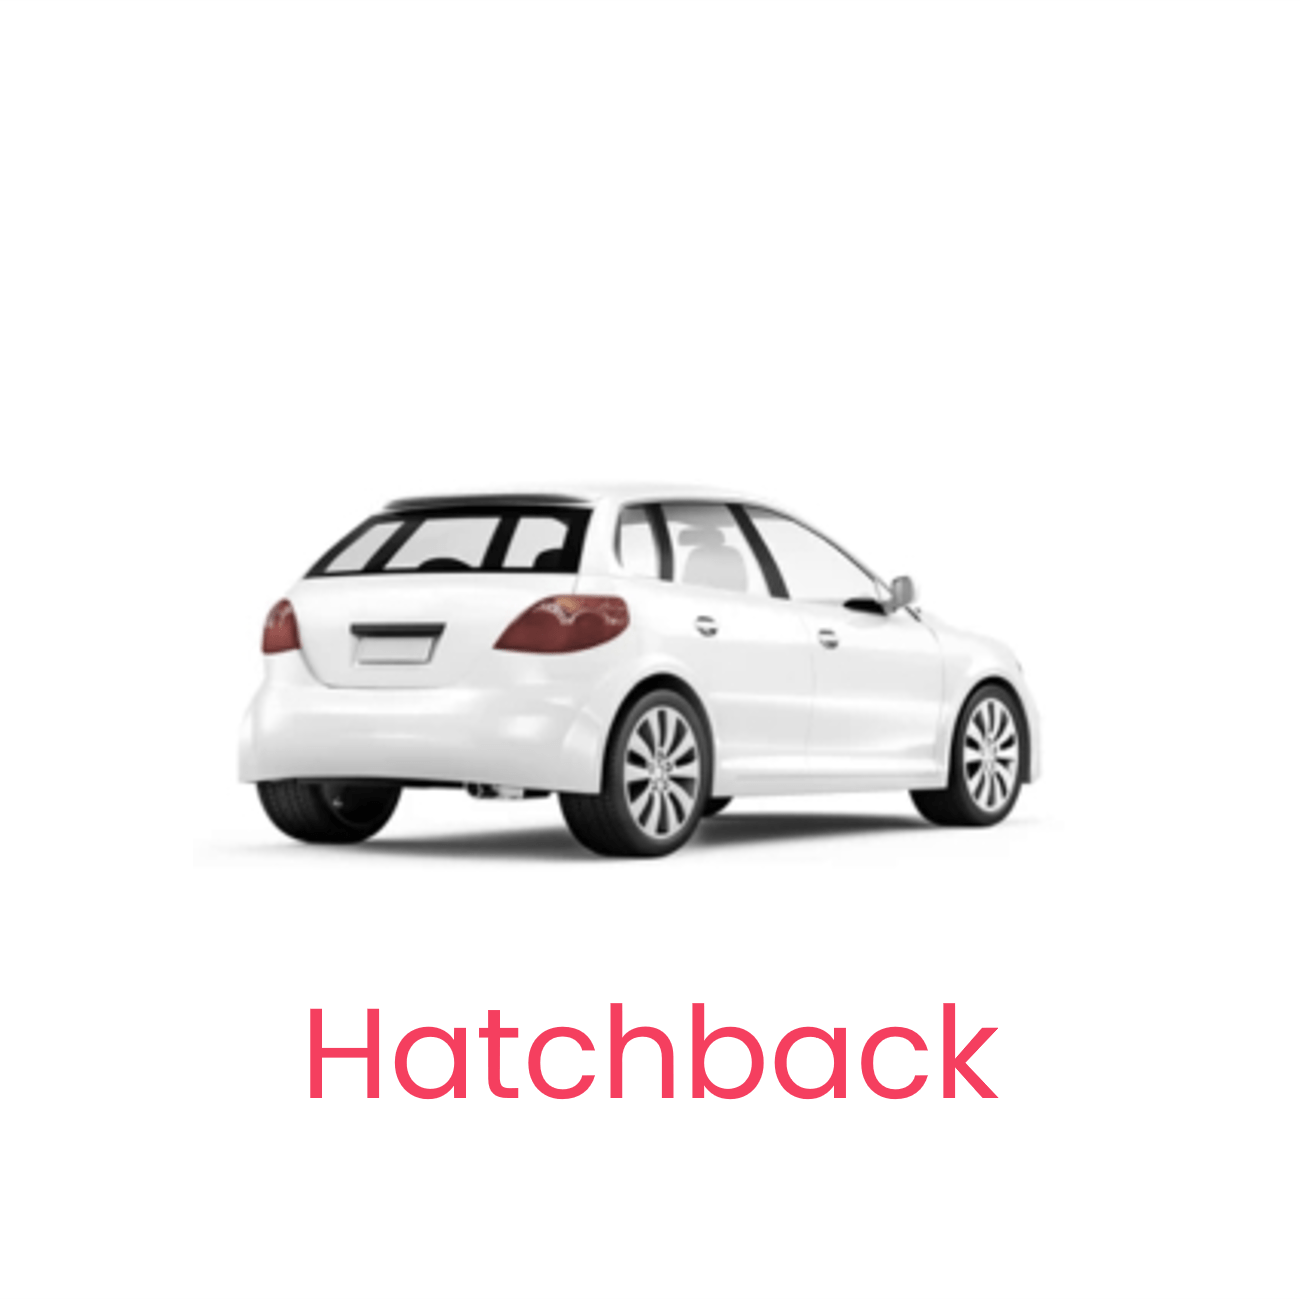 Hatchback-min